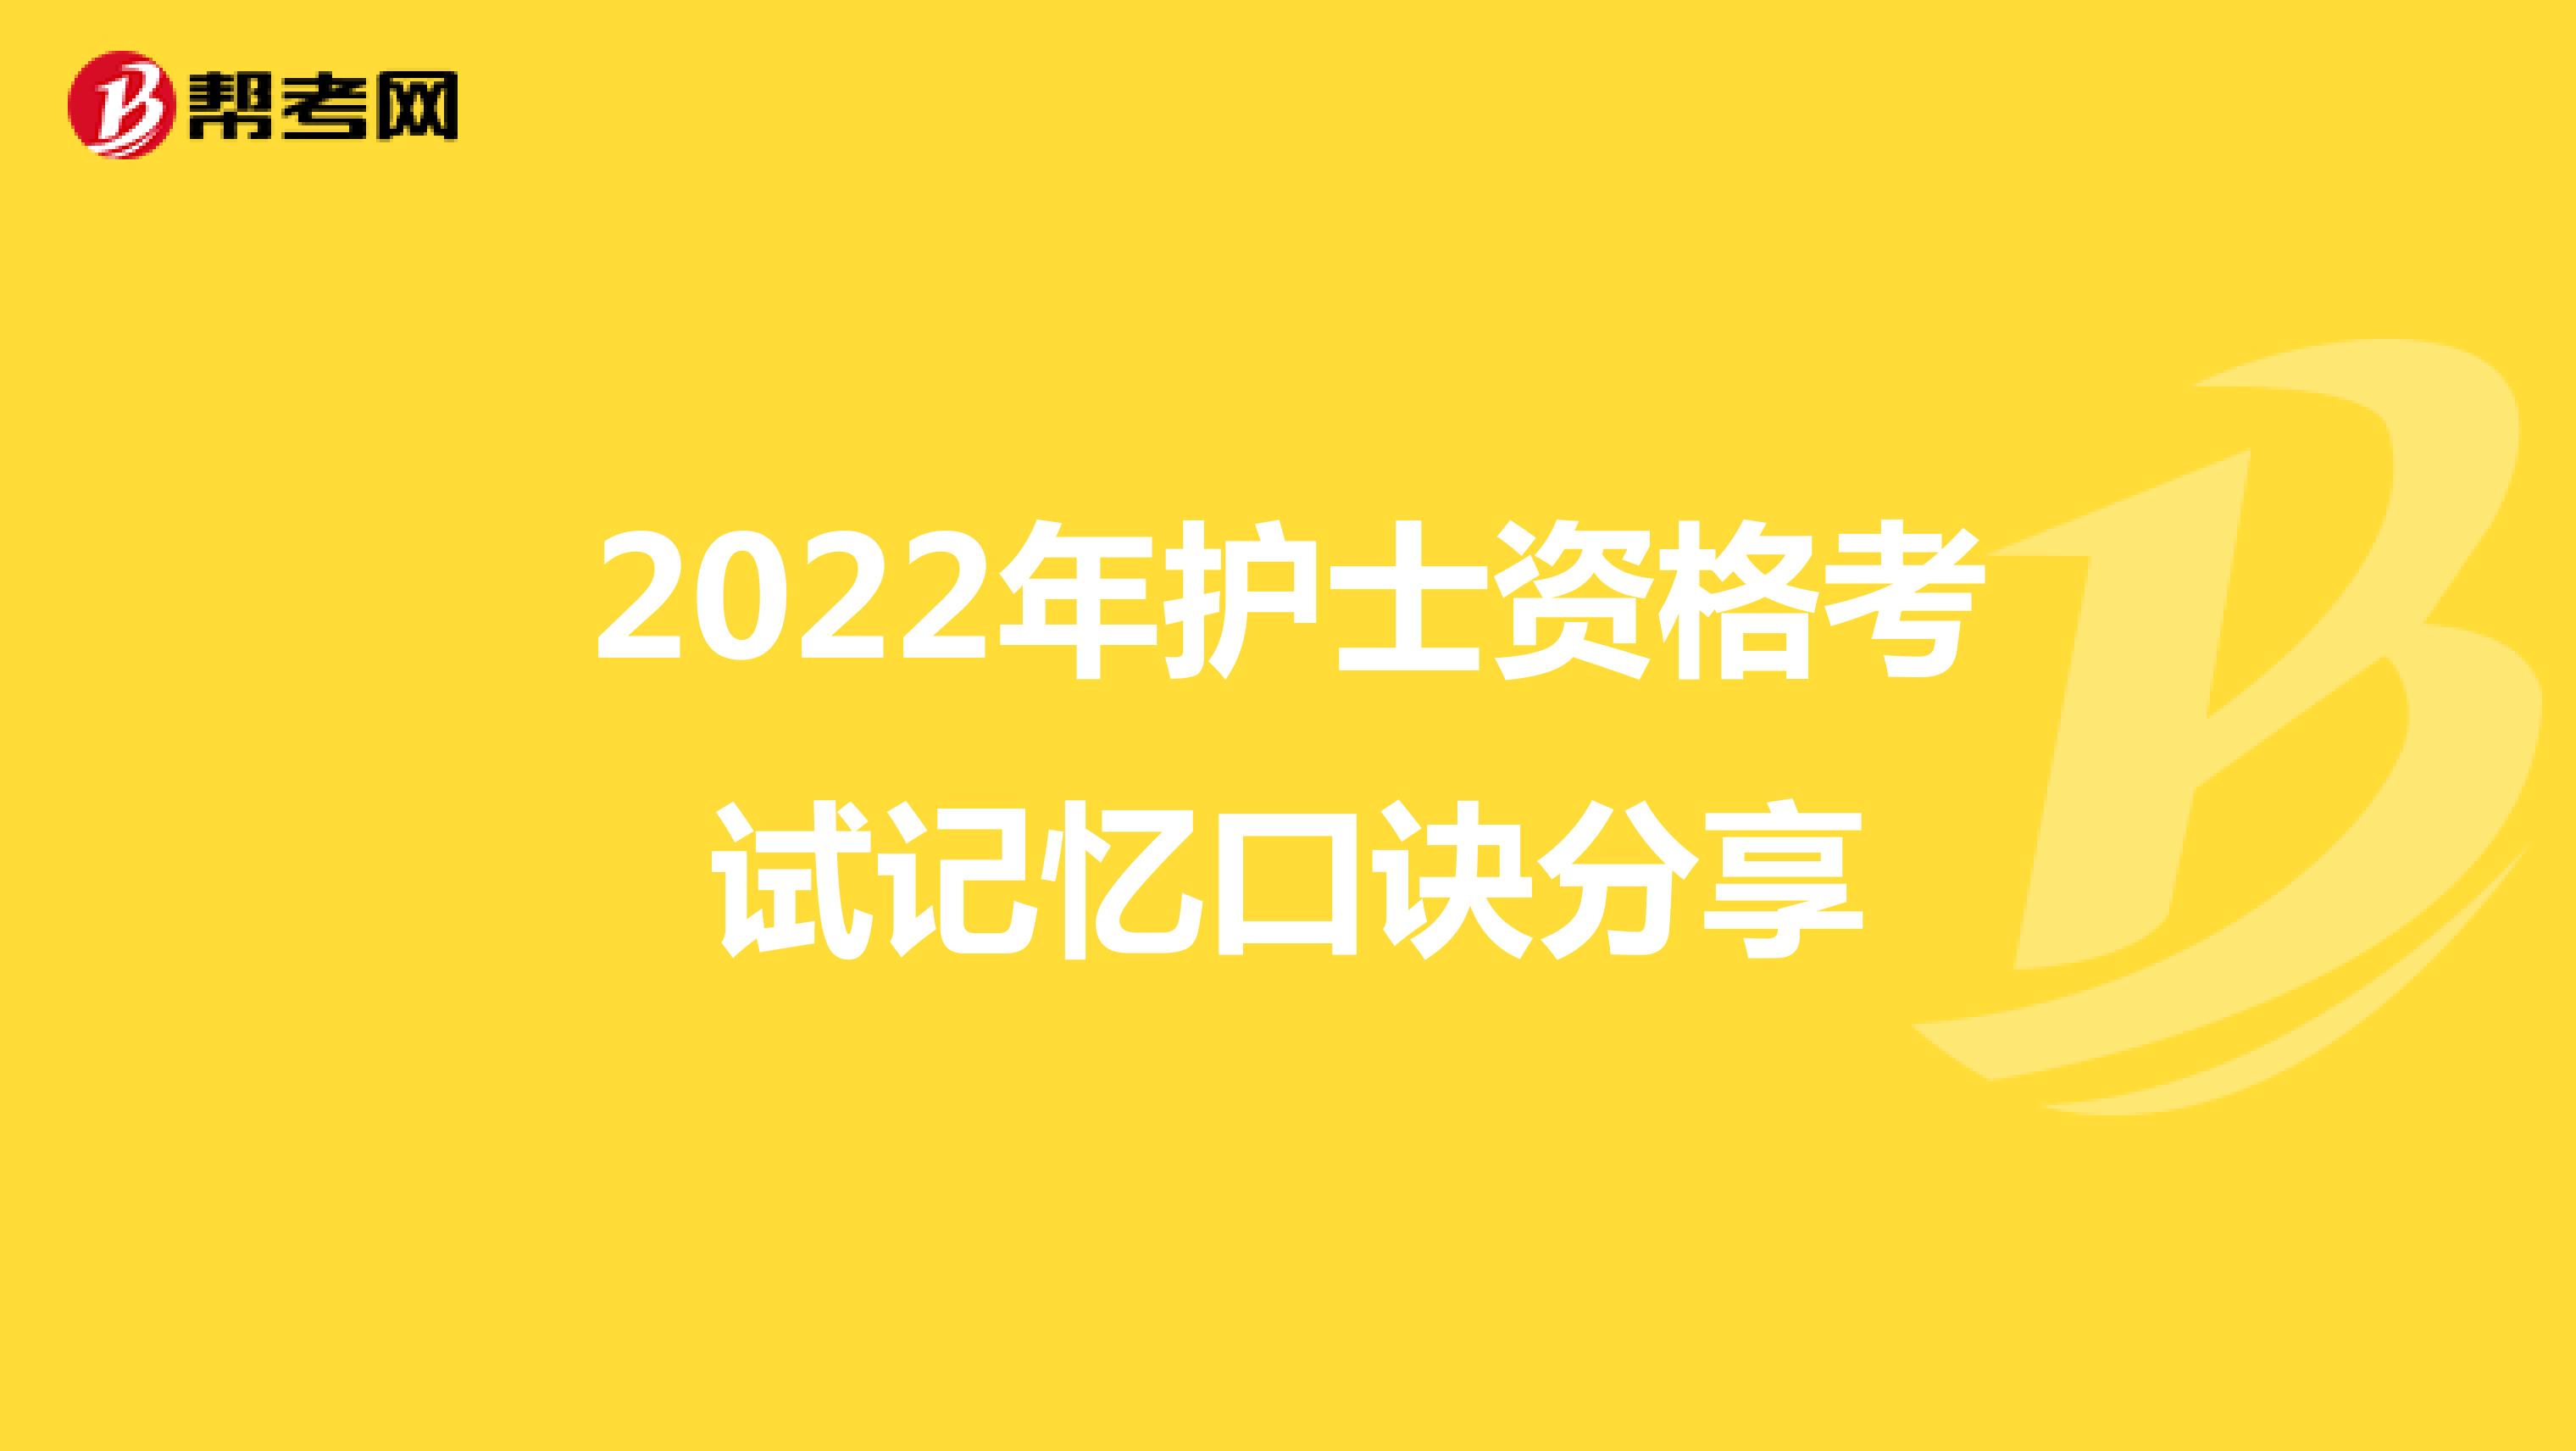 2022年护士资格考试记忆口诀分享